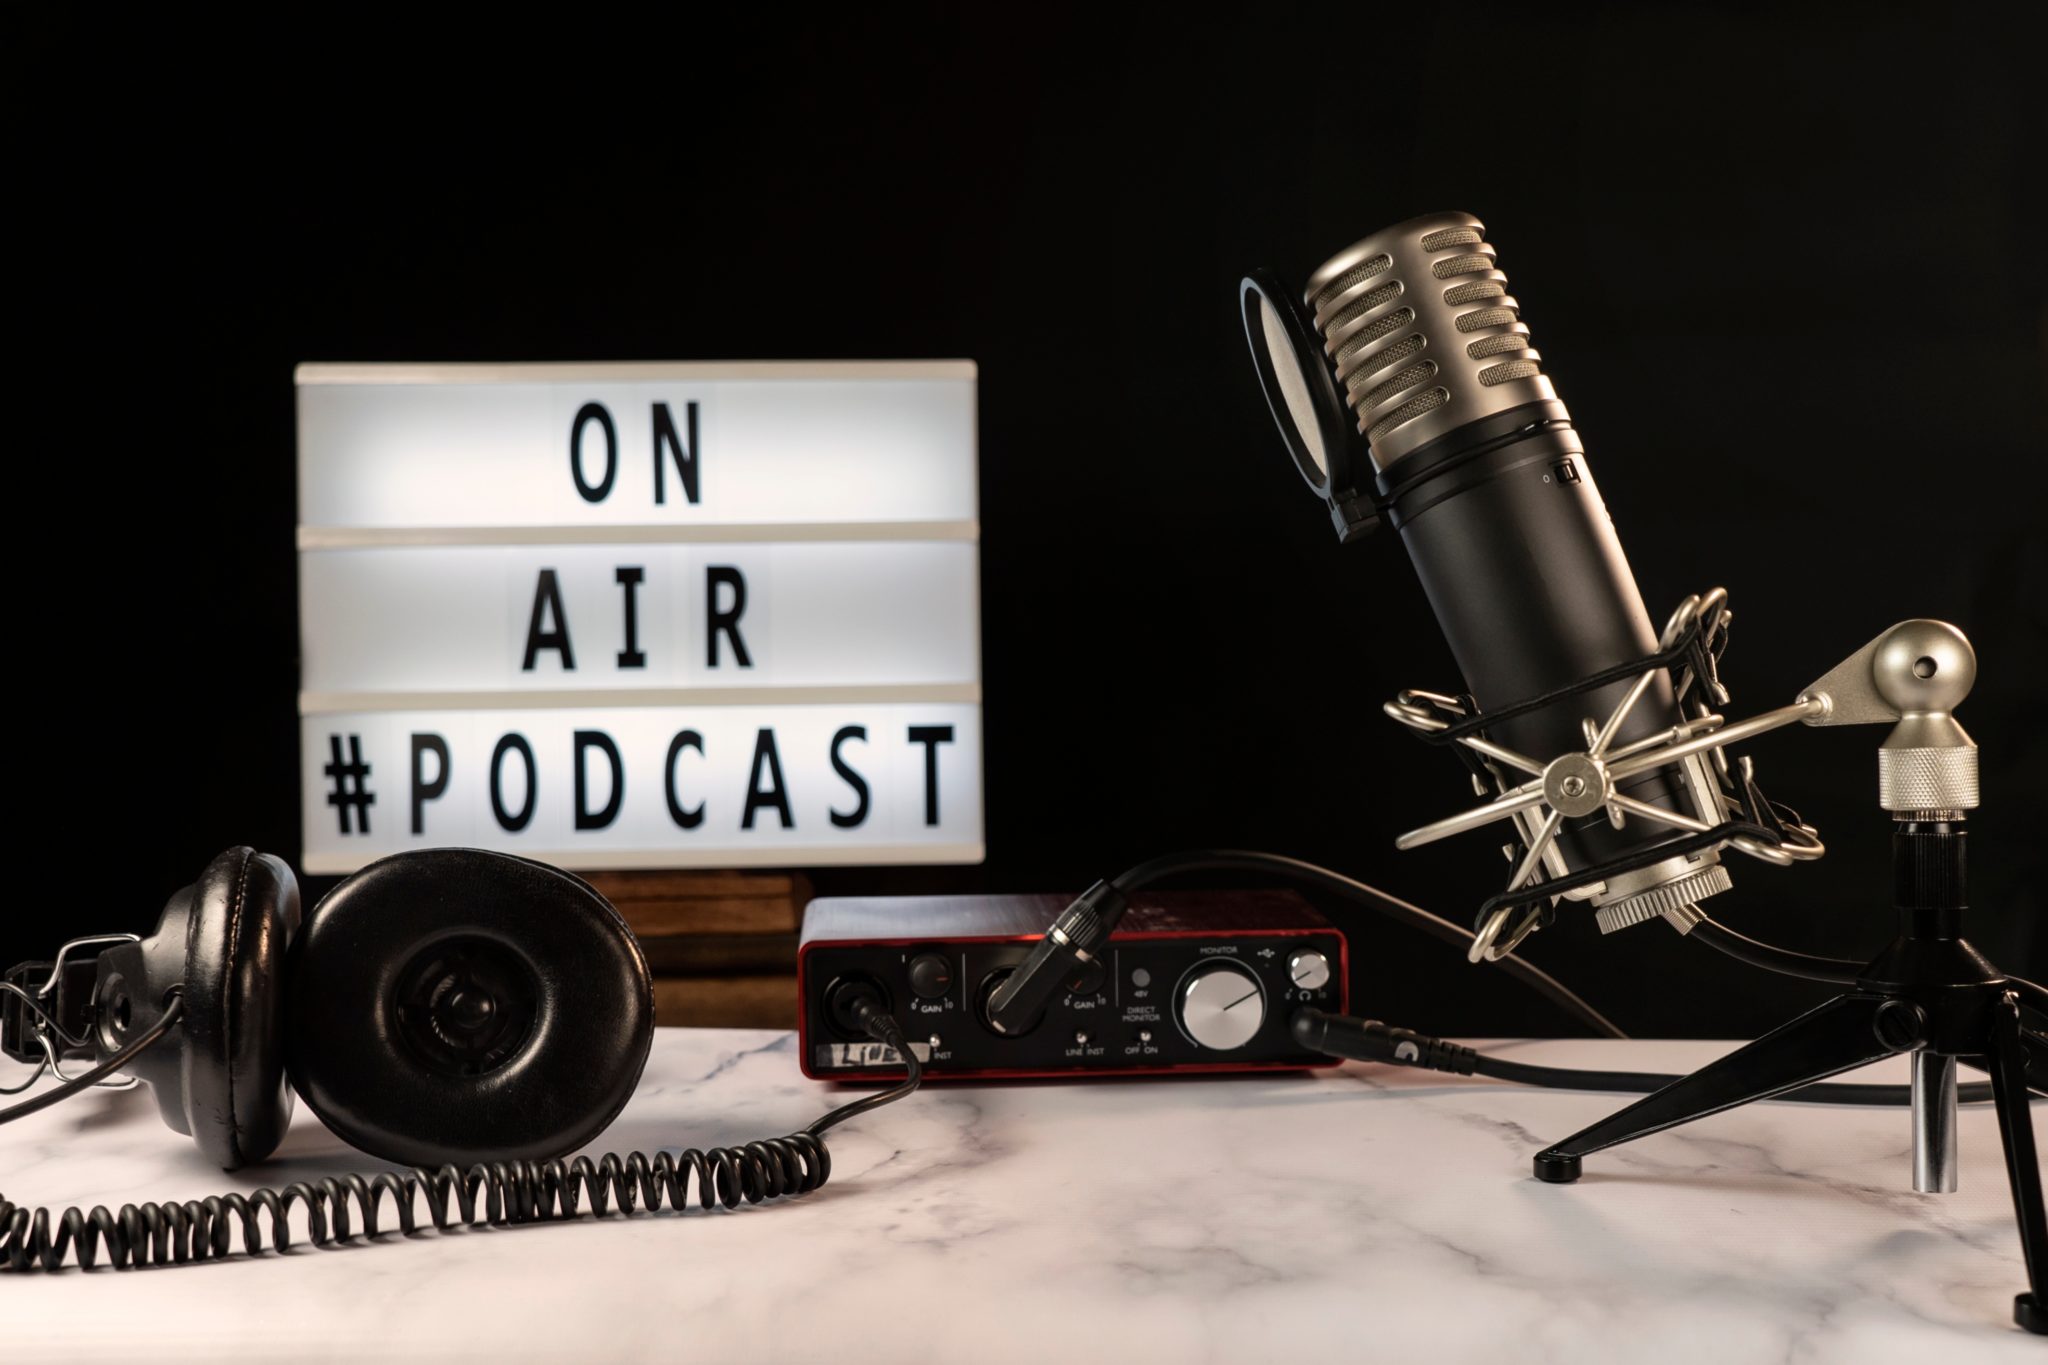 podcast-studio-set-with-microphone-headphones-co-2021-08-29-13-27-24-utc